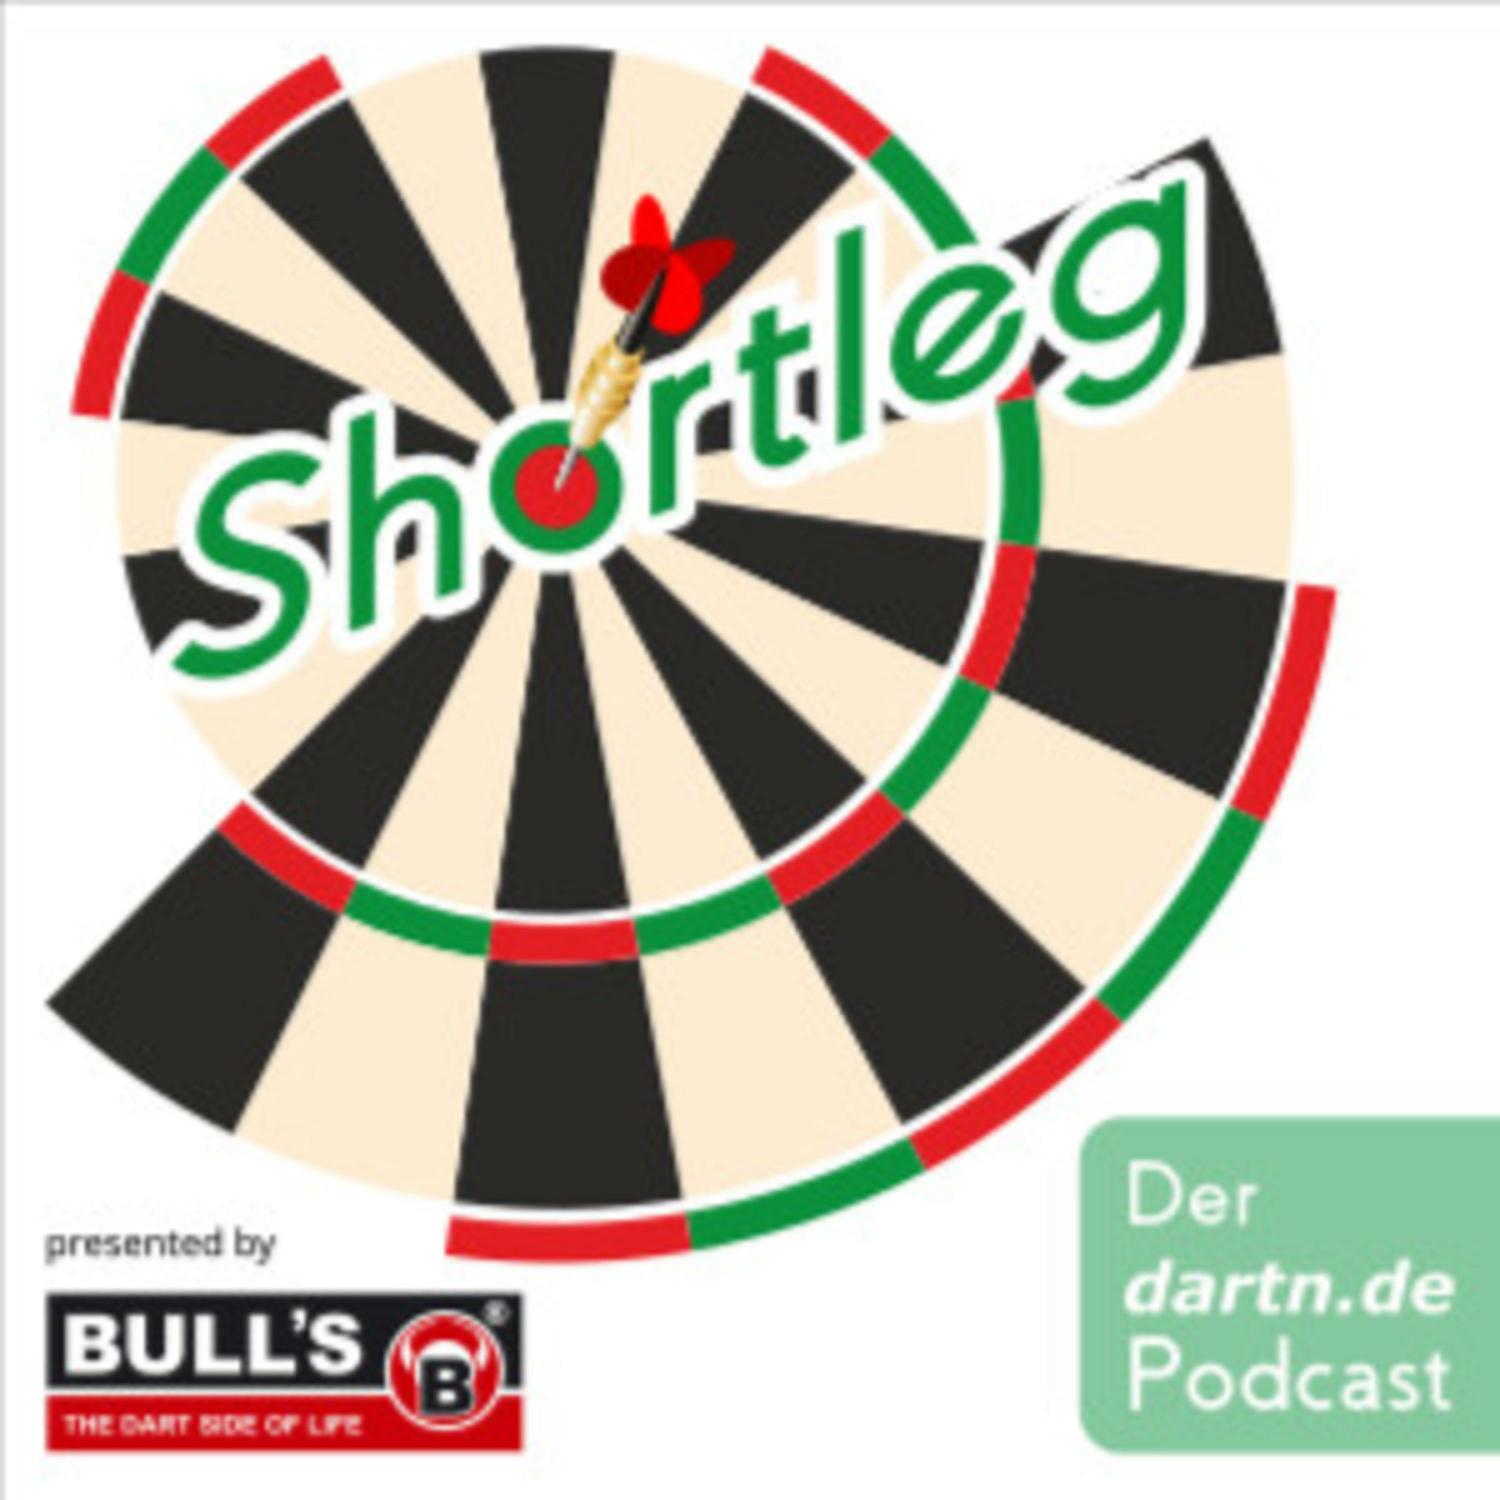 Shortleg – der dartn.de Podcast presented by Bulls